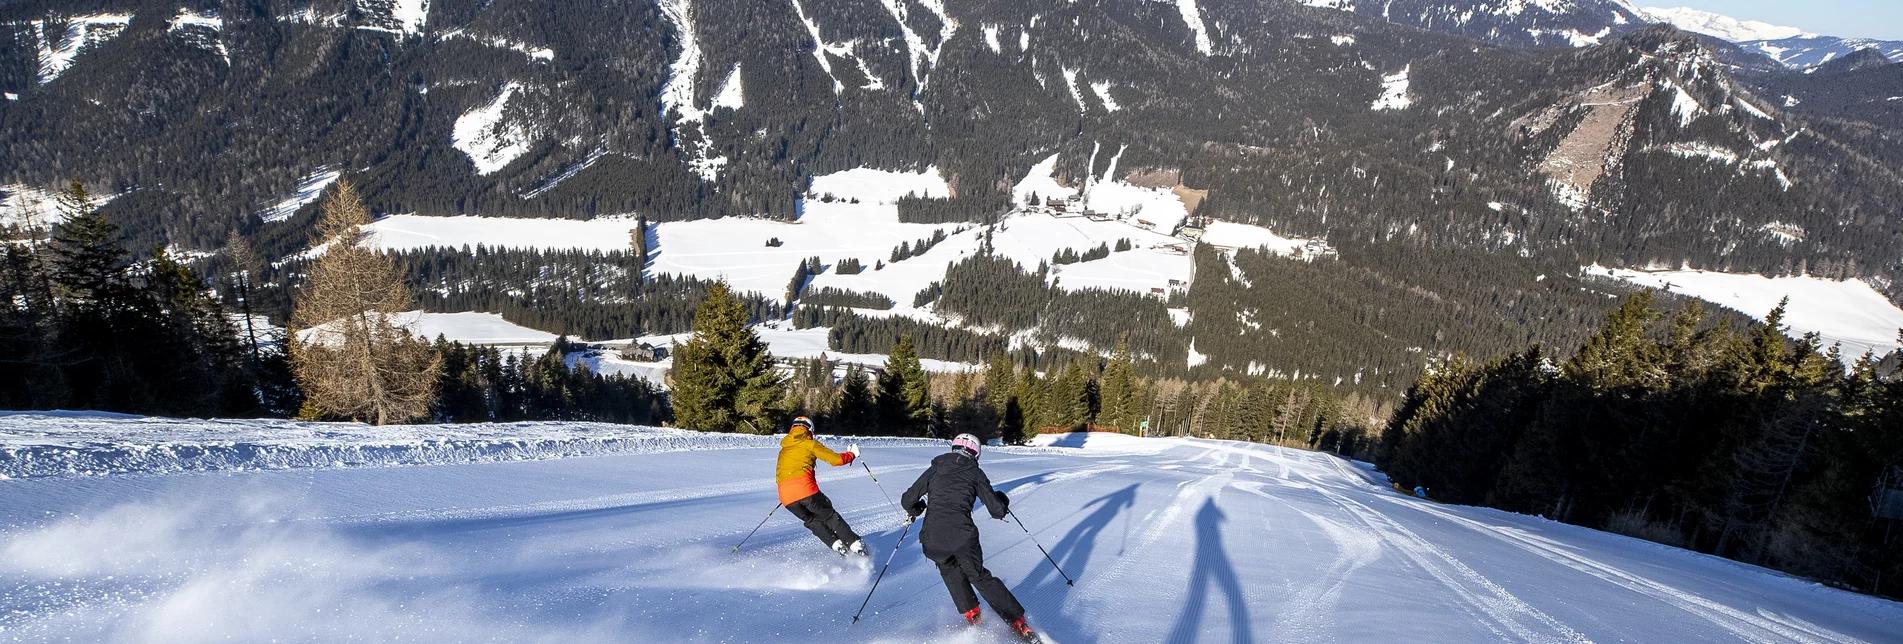 Skifahren im Murtal - Steiermark | © Erlebnisregion Murtal | Tom Lamm | Nur im Zusammenhang mit dem Tourismusverband Murtal/ der Erlebnisregion Murtal und Skifahren verwenden.